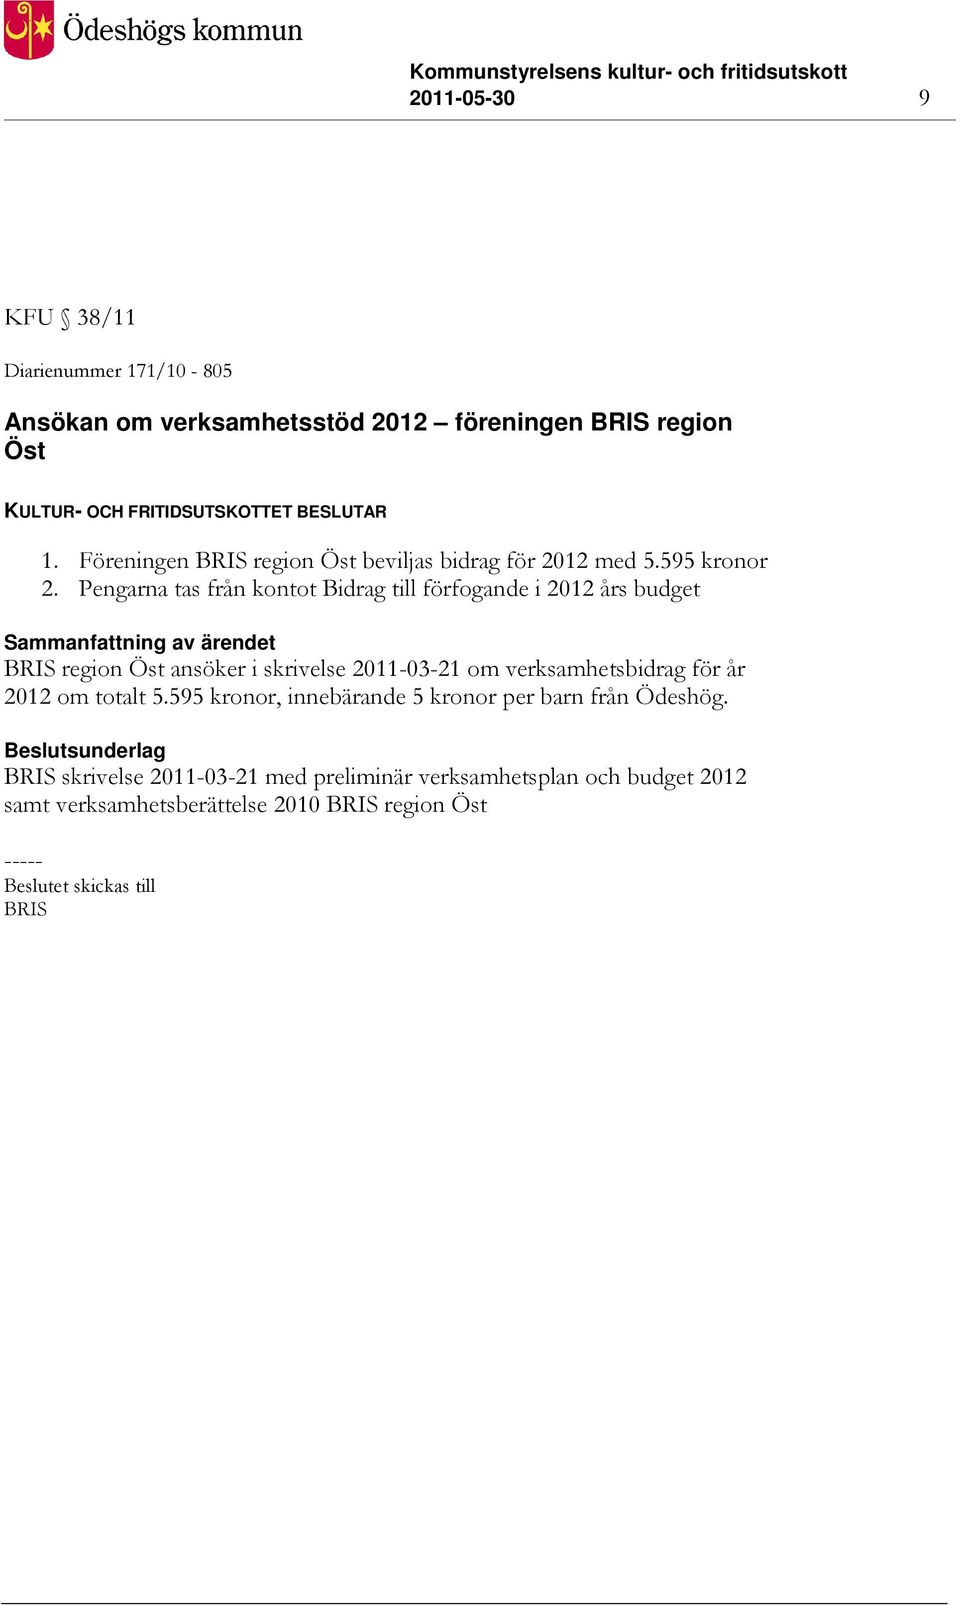 Pengarna tas från kontot Bidrag till förfogande i 2012 års budget BRIS region Öst ansöker i skrivelse 2011-03-21 om verksamhetsbidrag